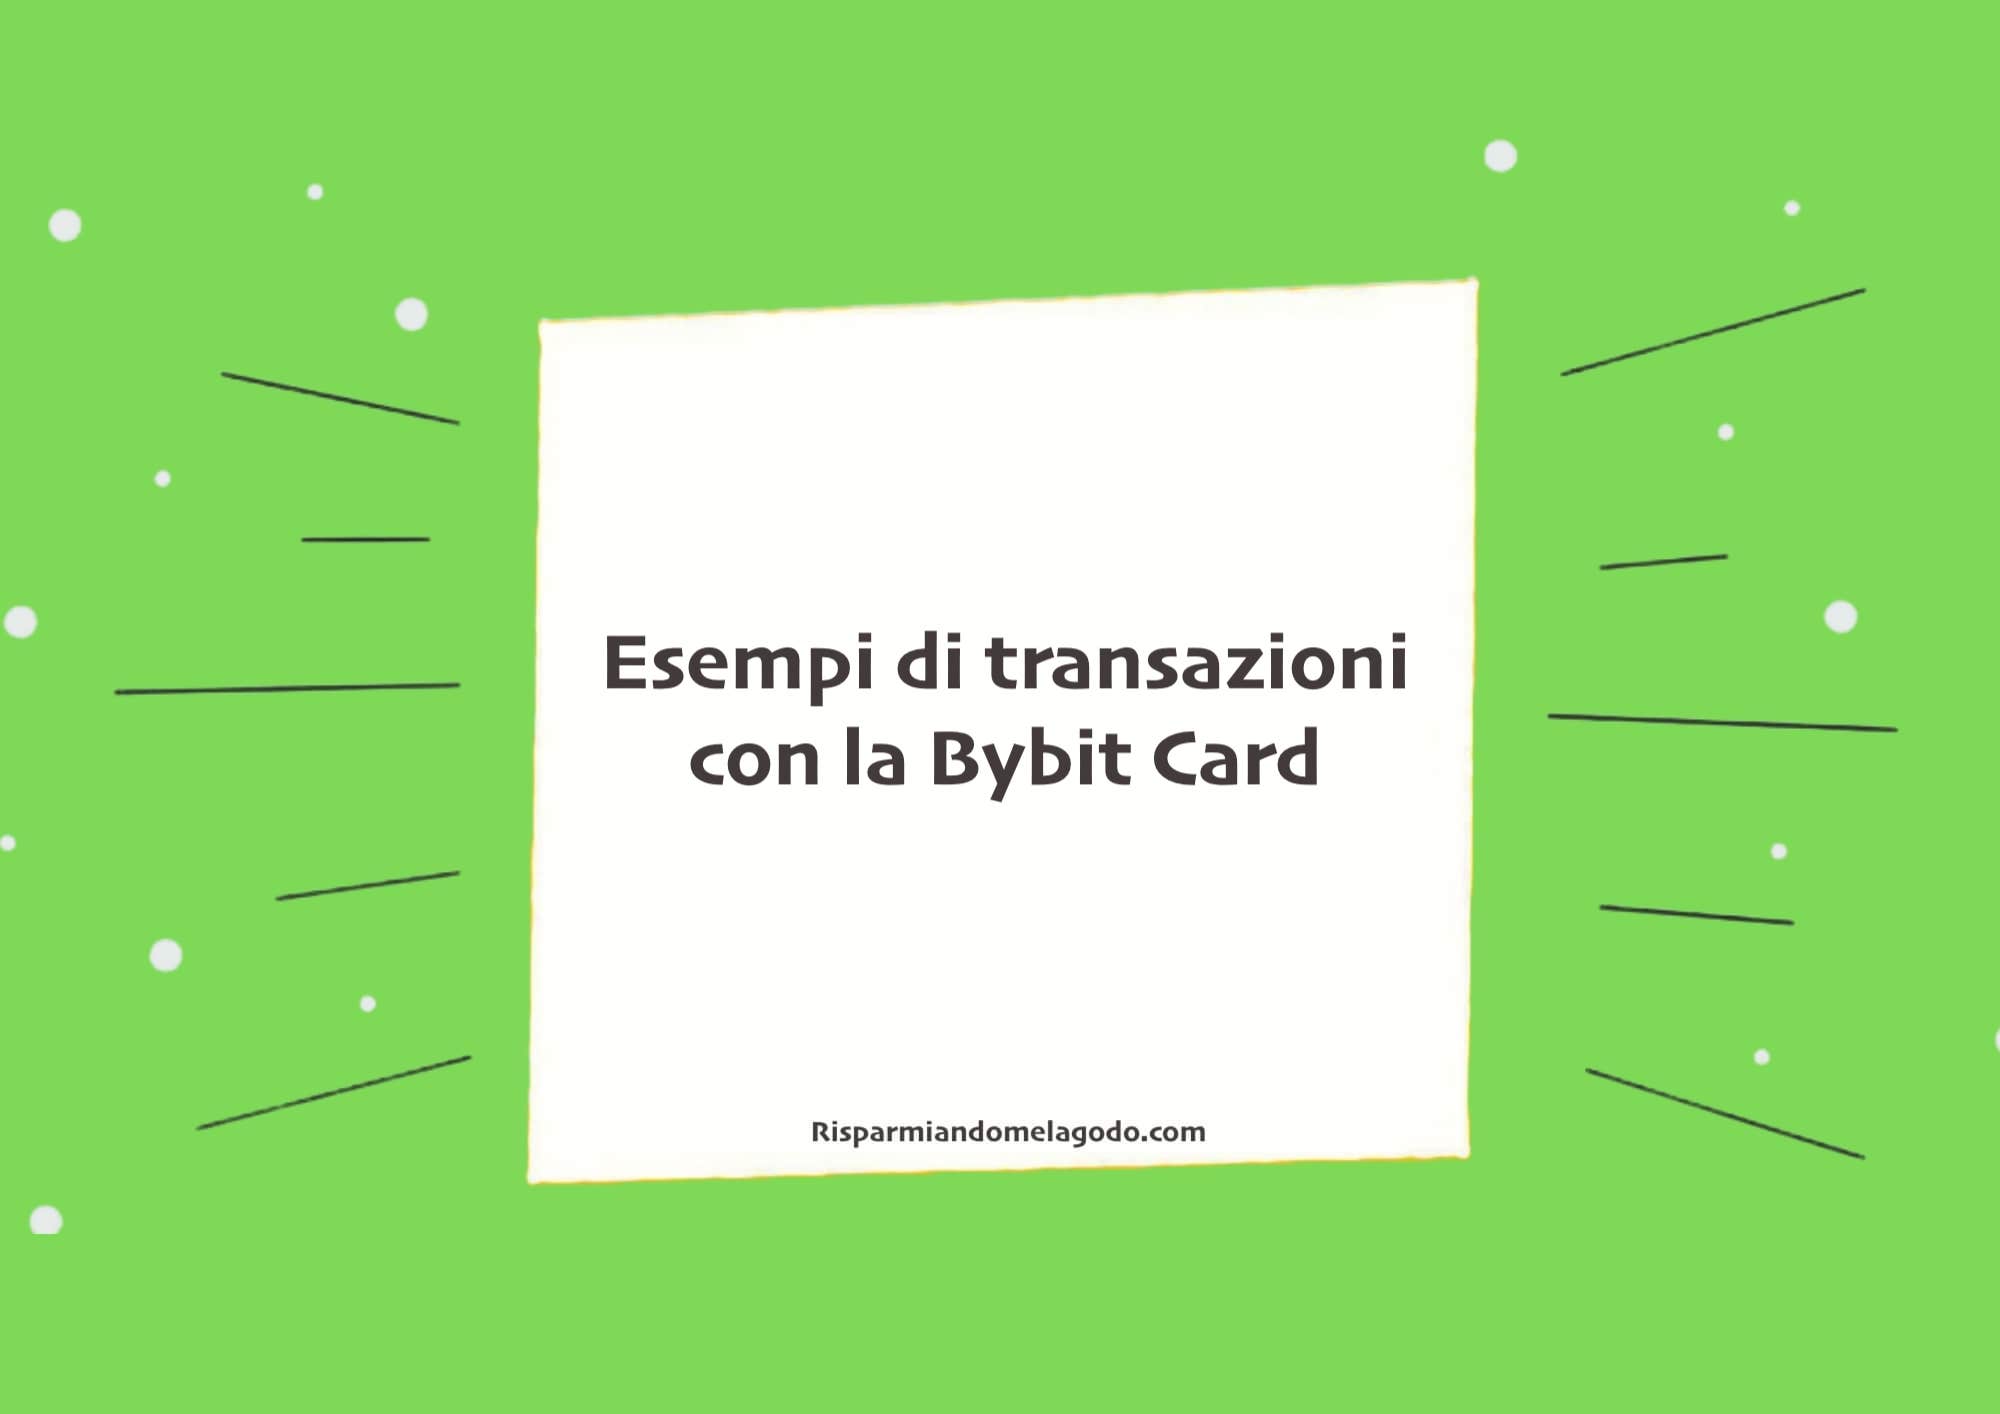 Esempi di transazioni con la Bybit Card